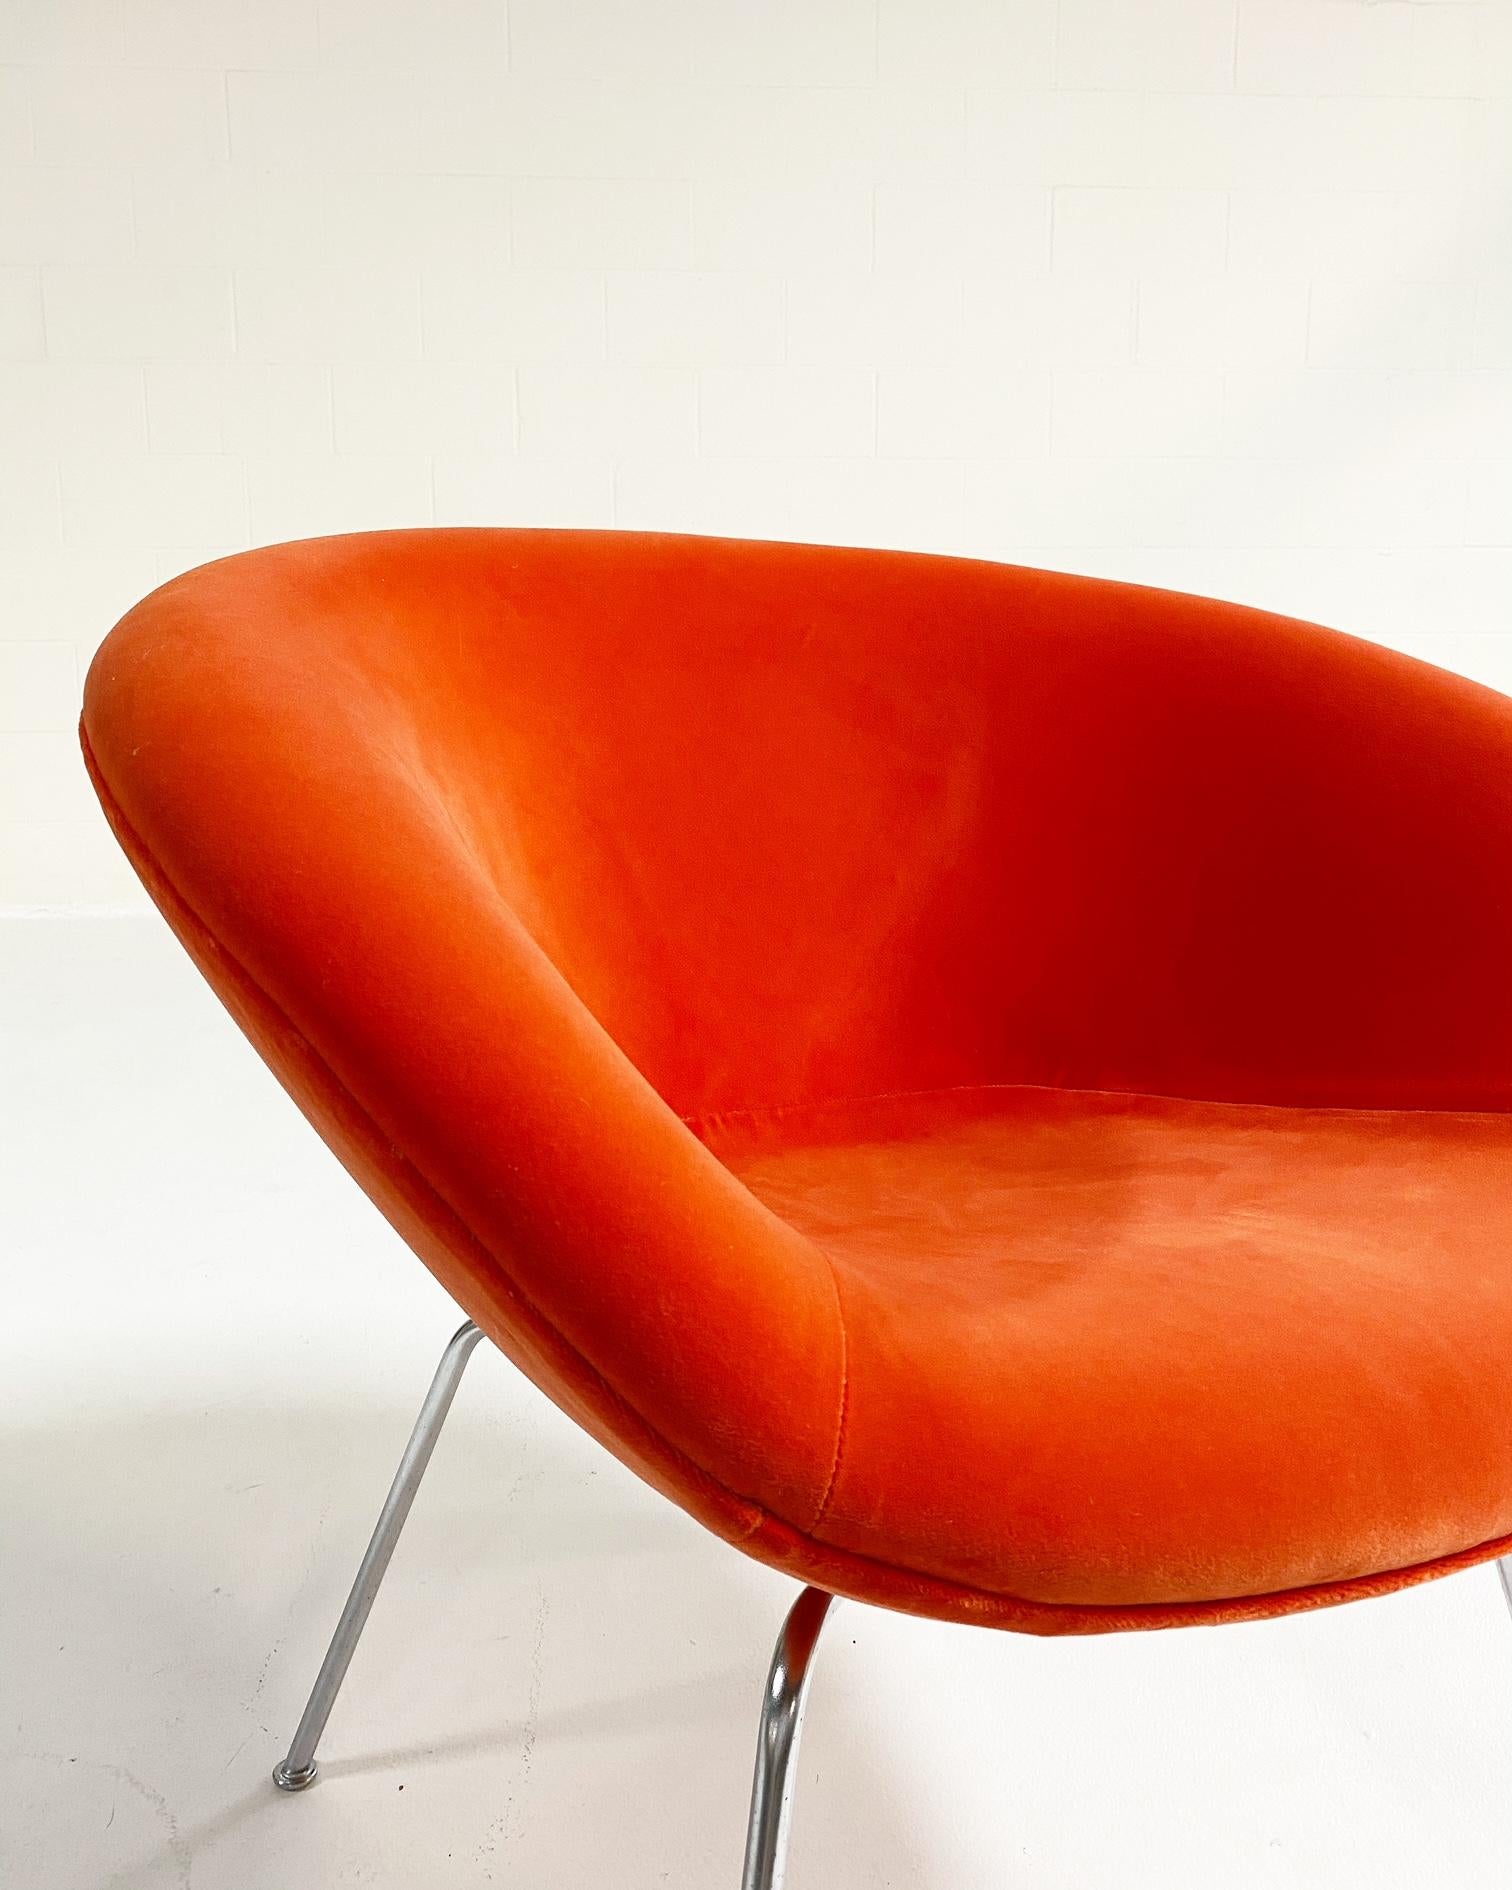 Arne Jacobsen était un véritable visionnaire en tant qu'architecte et designer, et sa chaise Pot est un petit bijou du design du milieu du siècle dernier. Restaurée dans un velours orange pop ludique par Loro Piana, cette chaise est parfaite pour